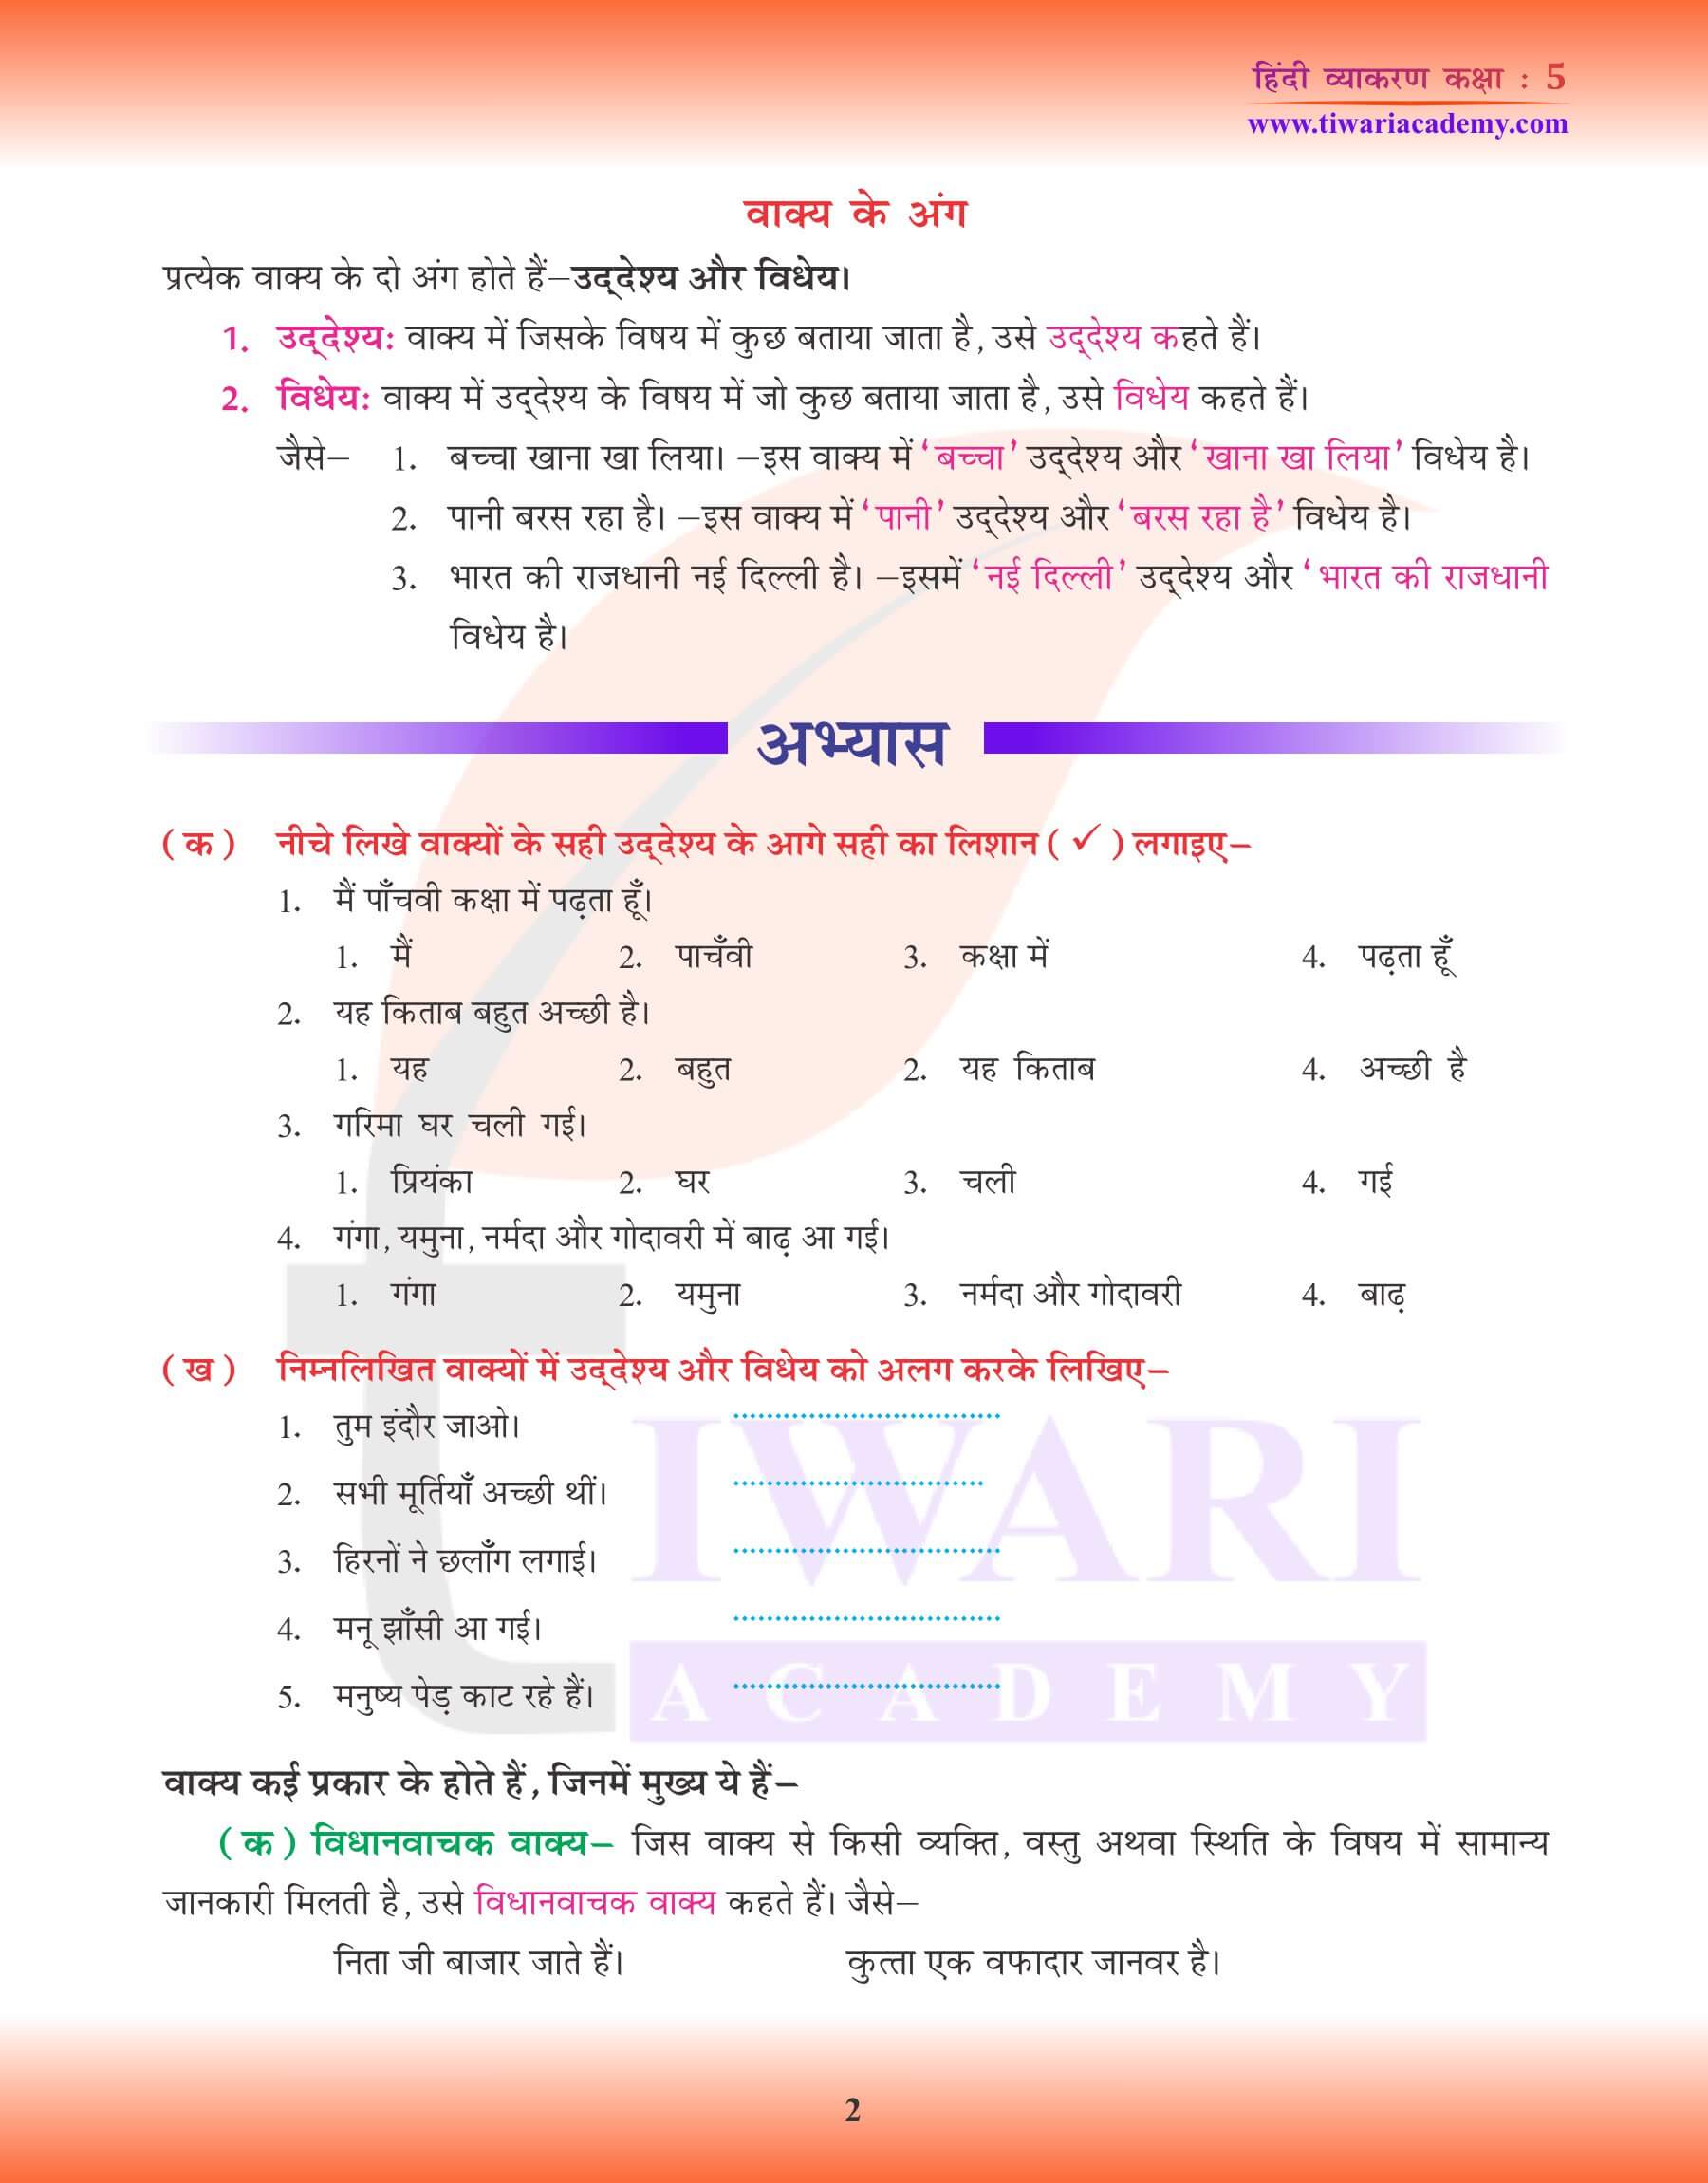 कक्षा 5 हिंदी व्याकरण में वाक्य के अंग